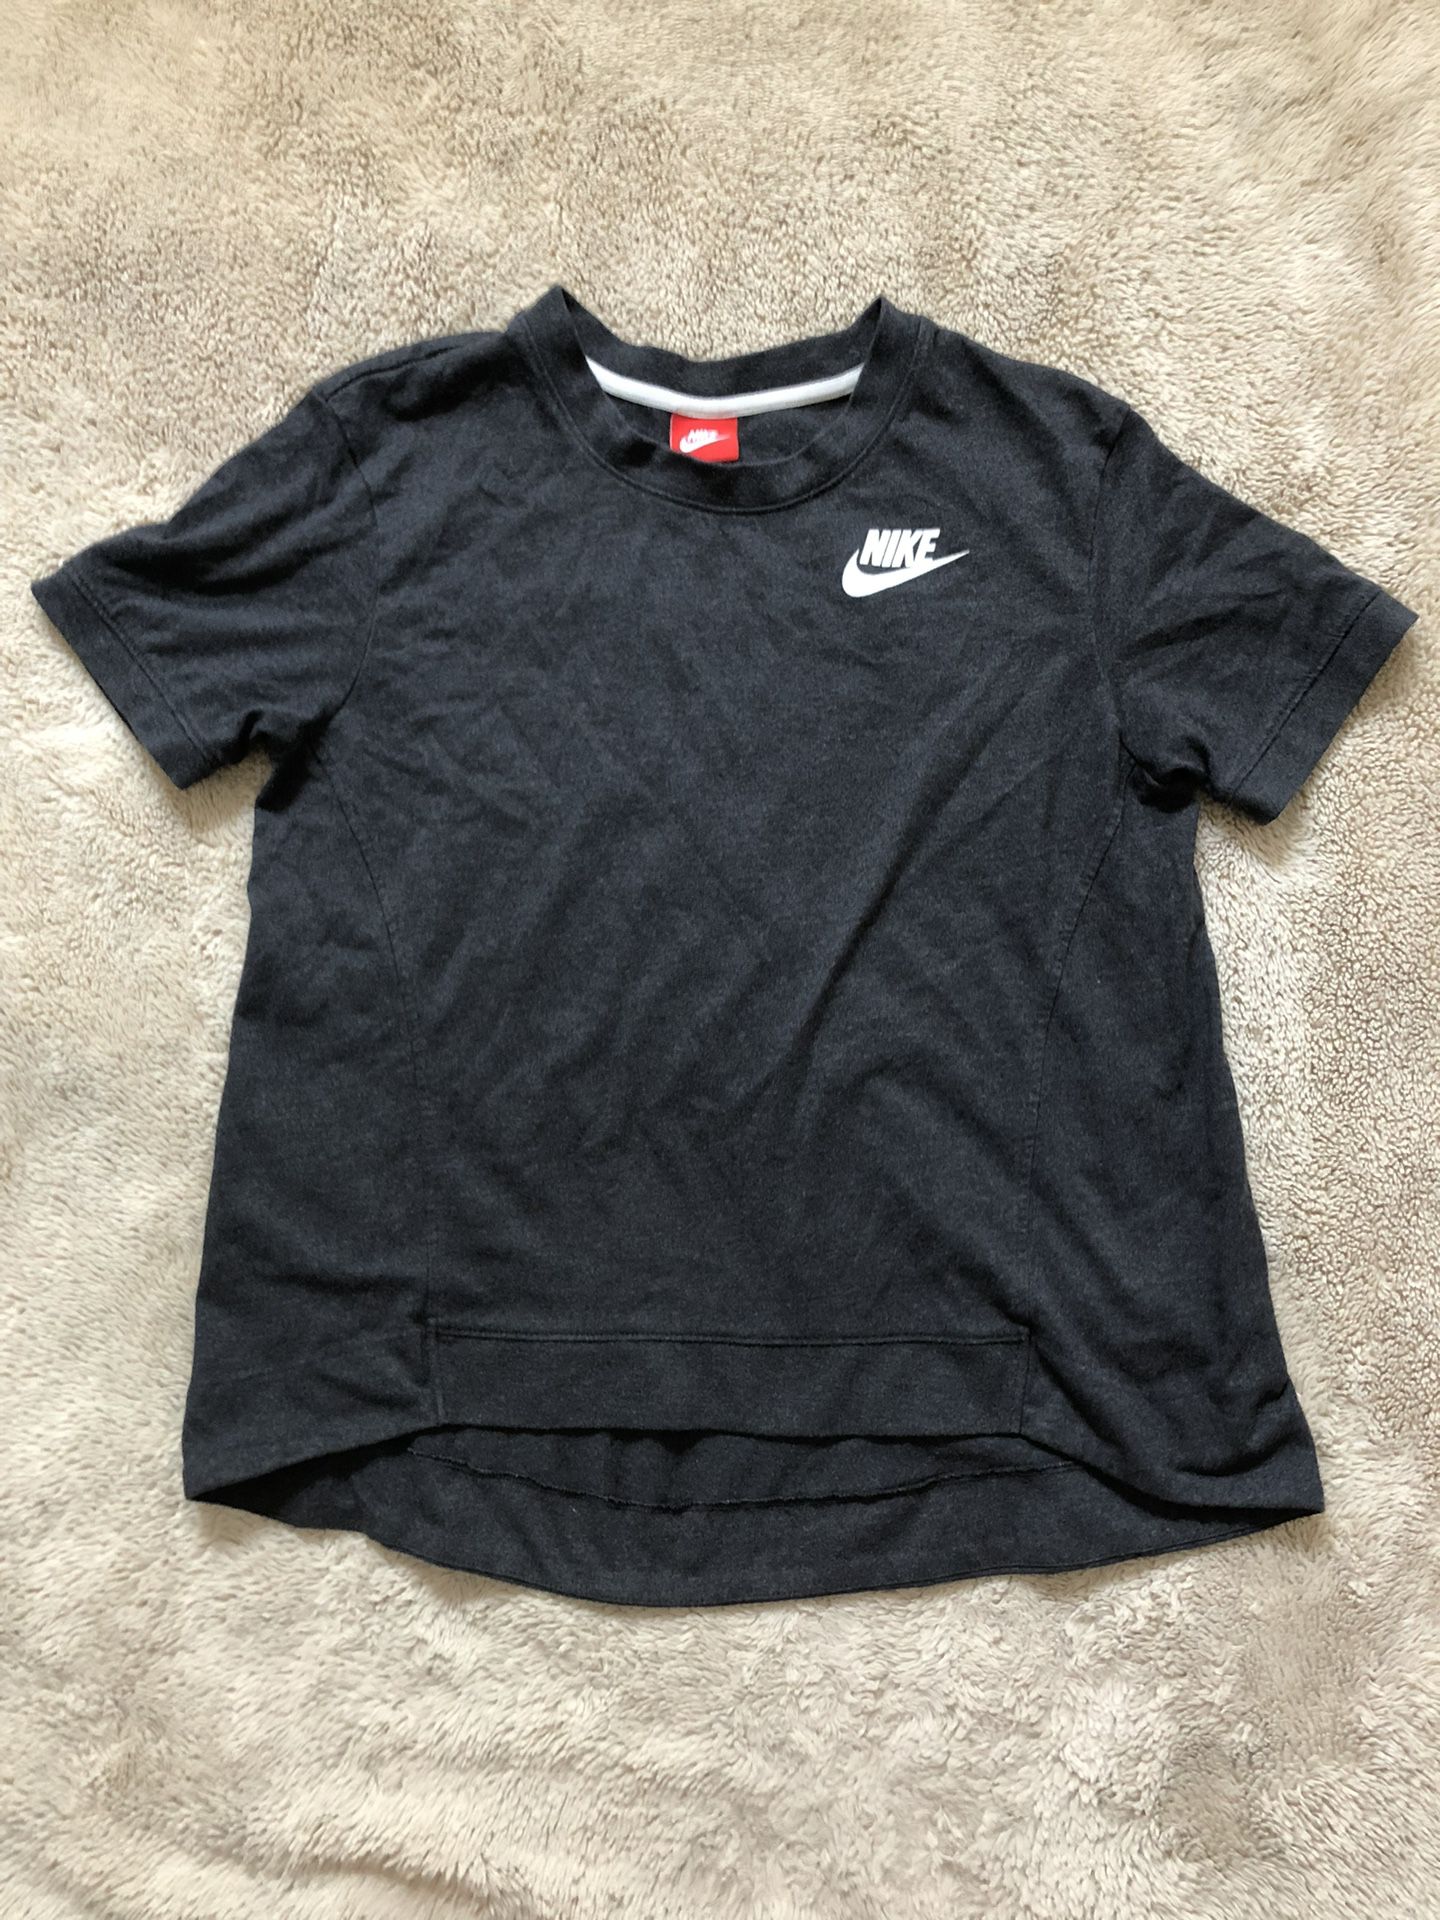 Nike Woman’s Shirt